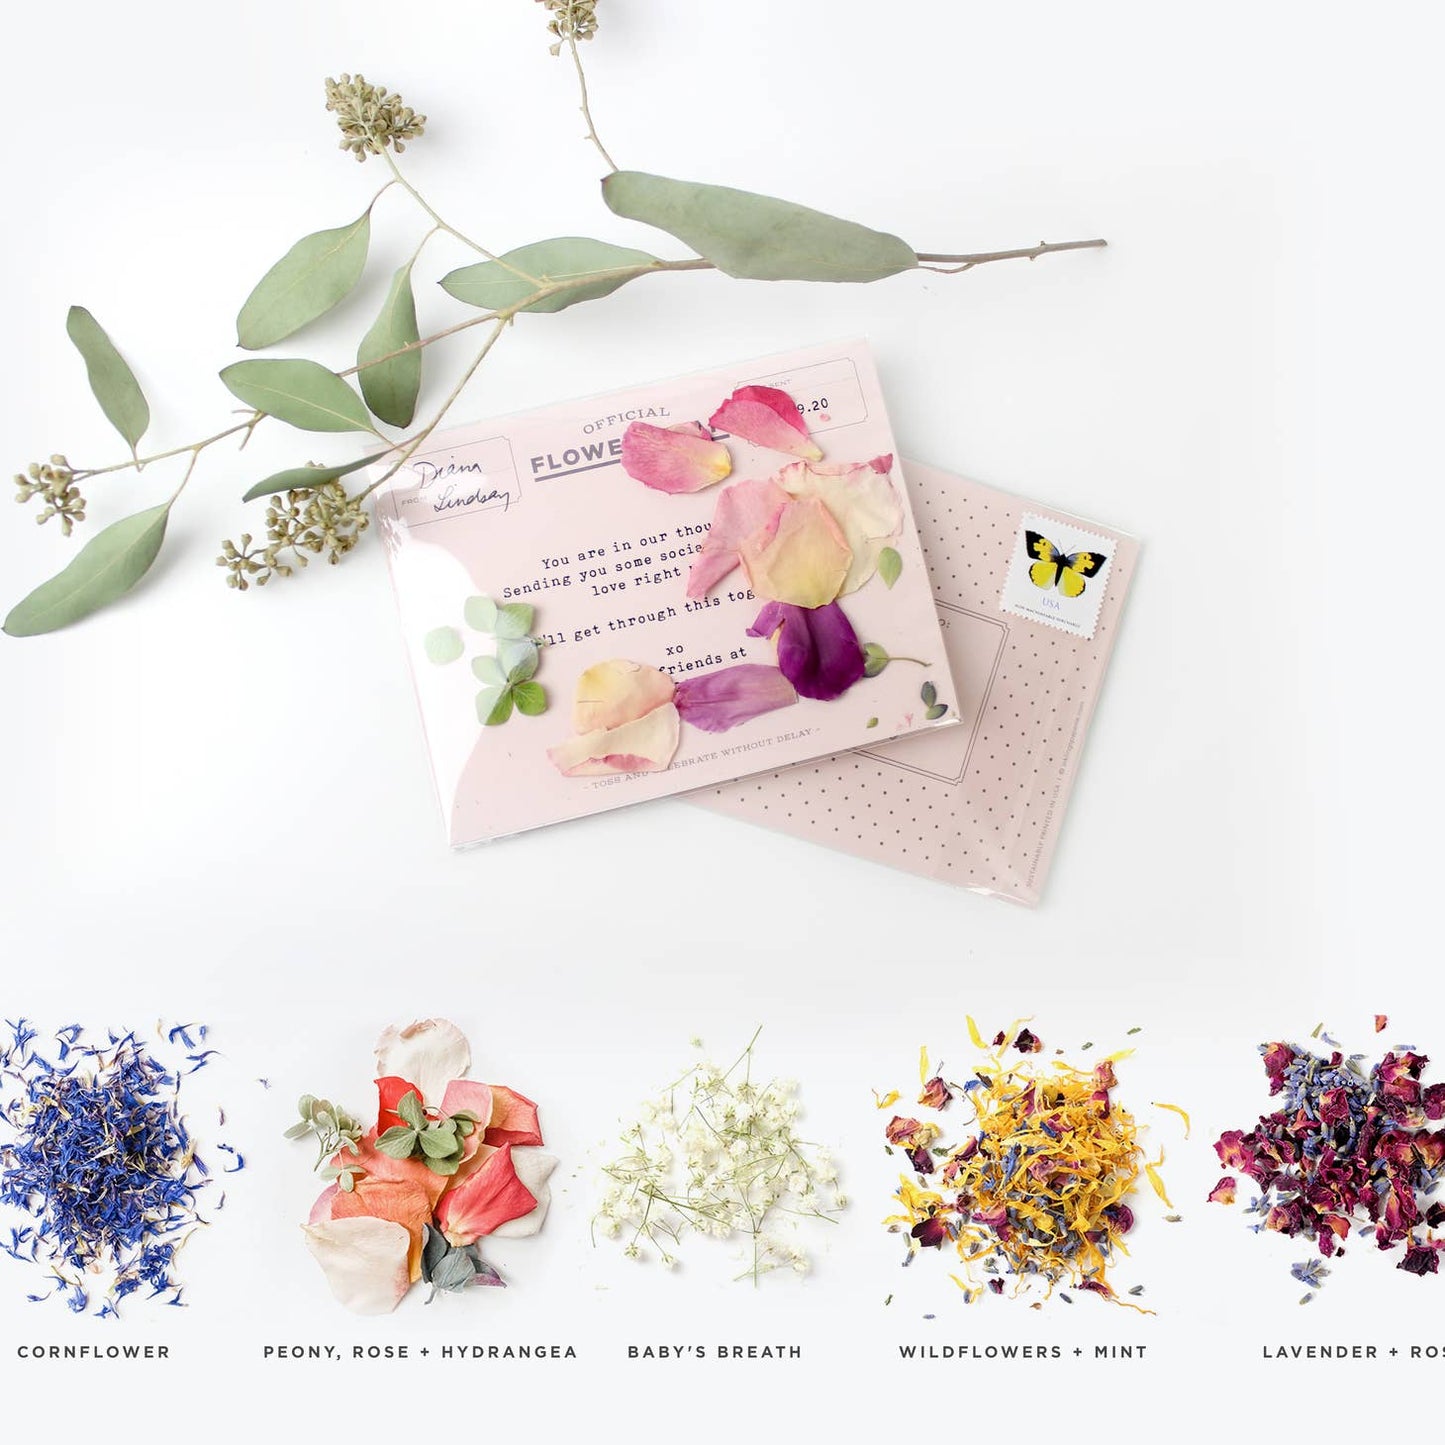 Flowergram - Wildflowers + Mint